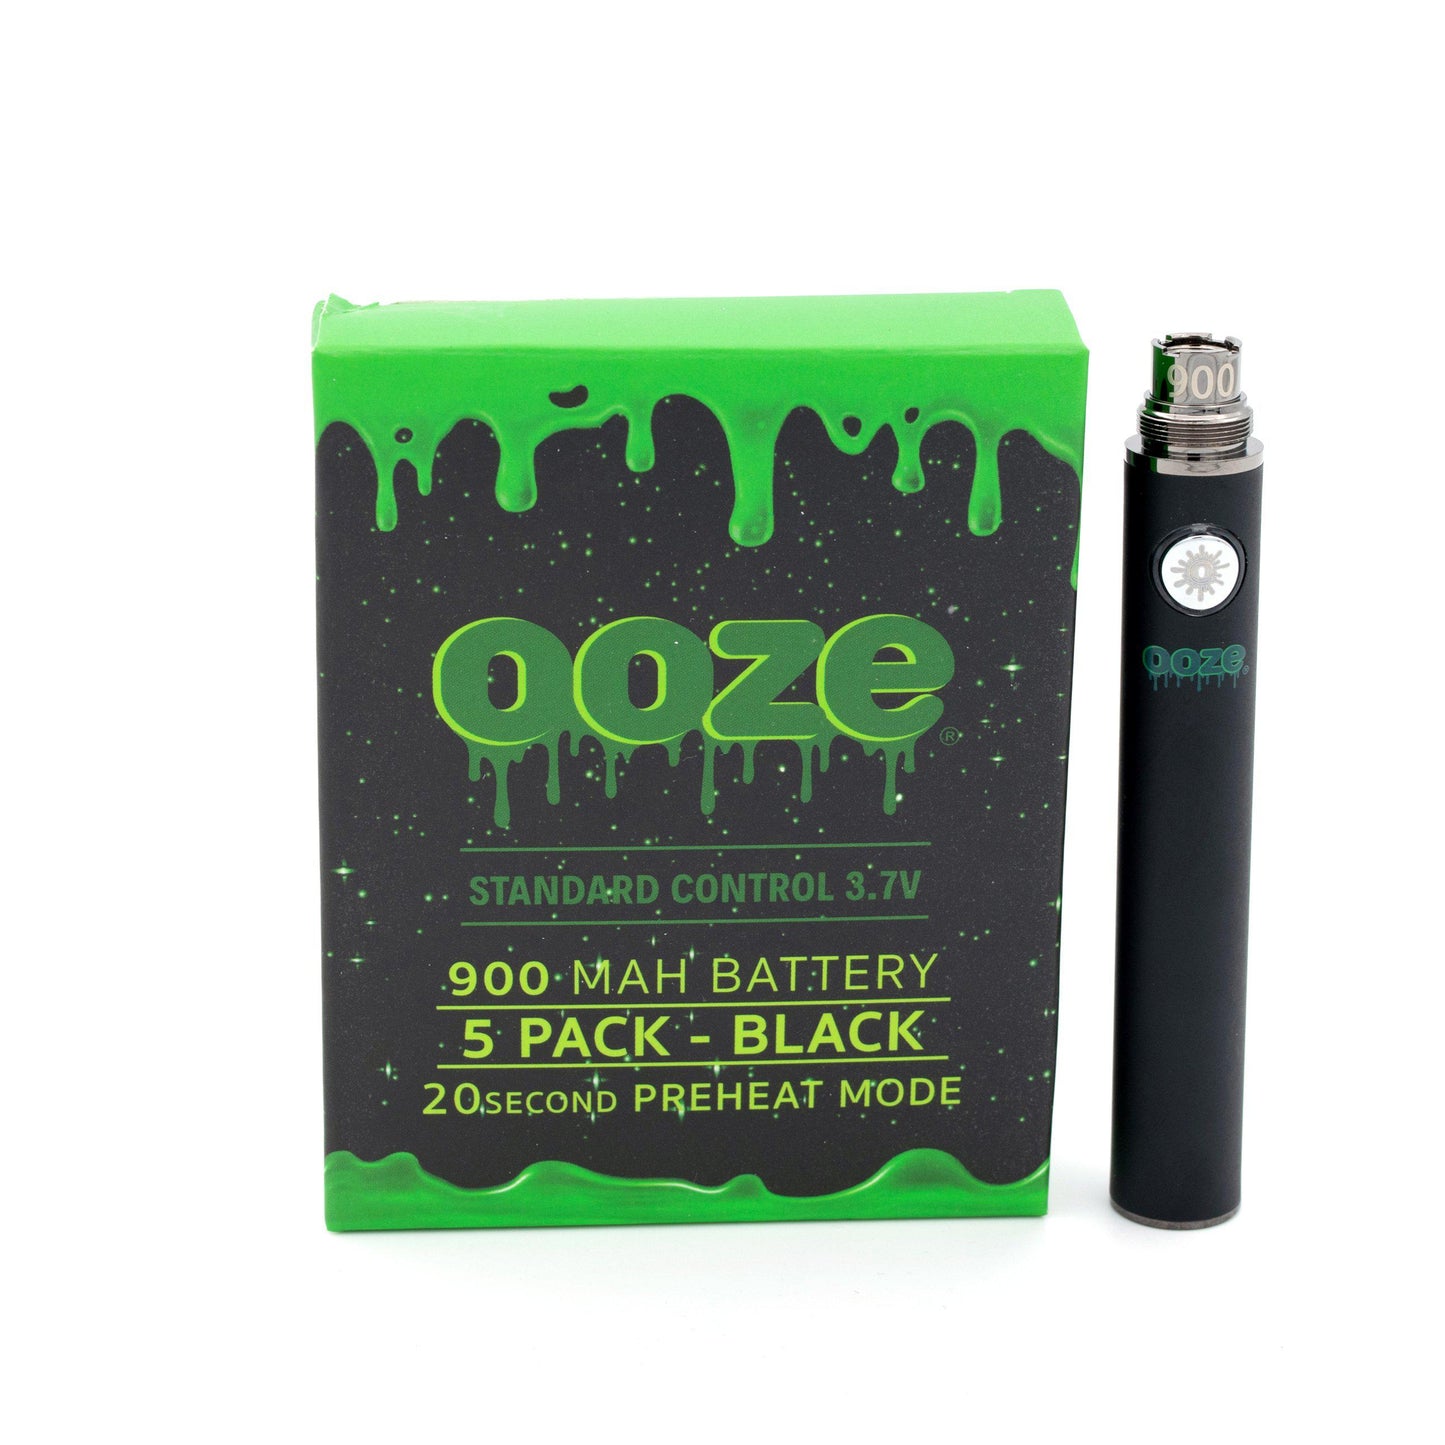 Ooze Battery 650mAh / 900mAh / 1100mAh 5 Pack - Non-twist